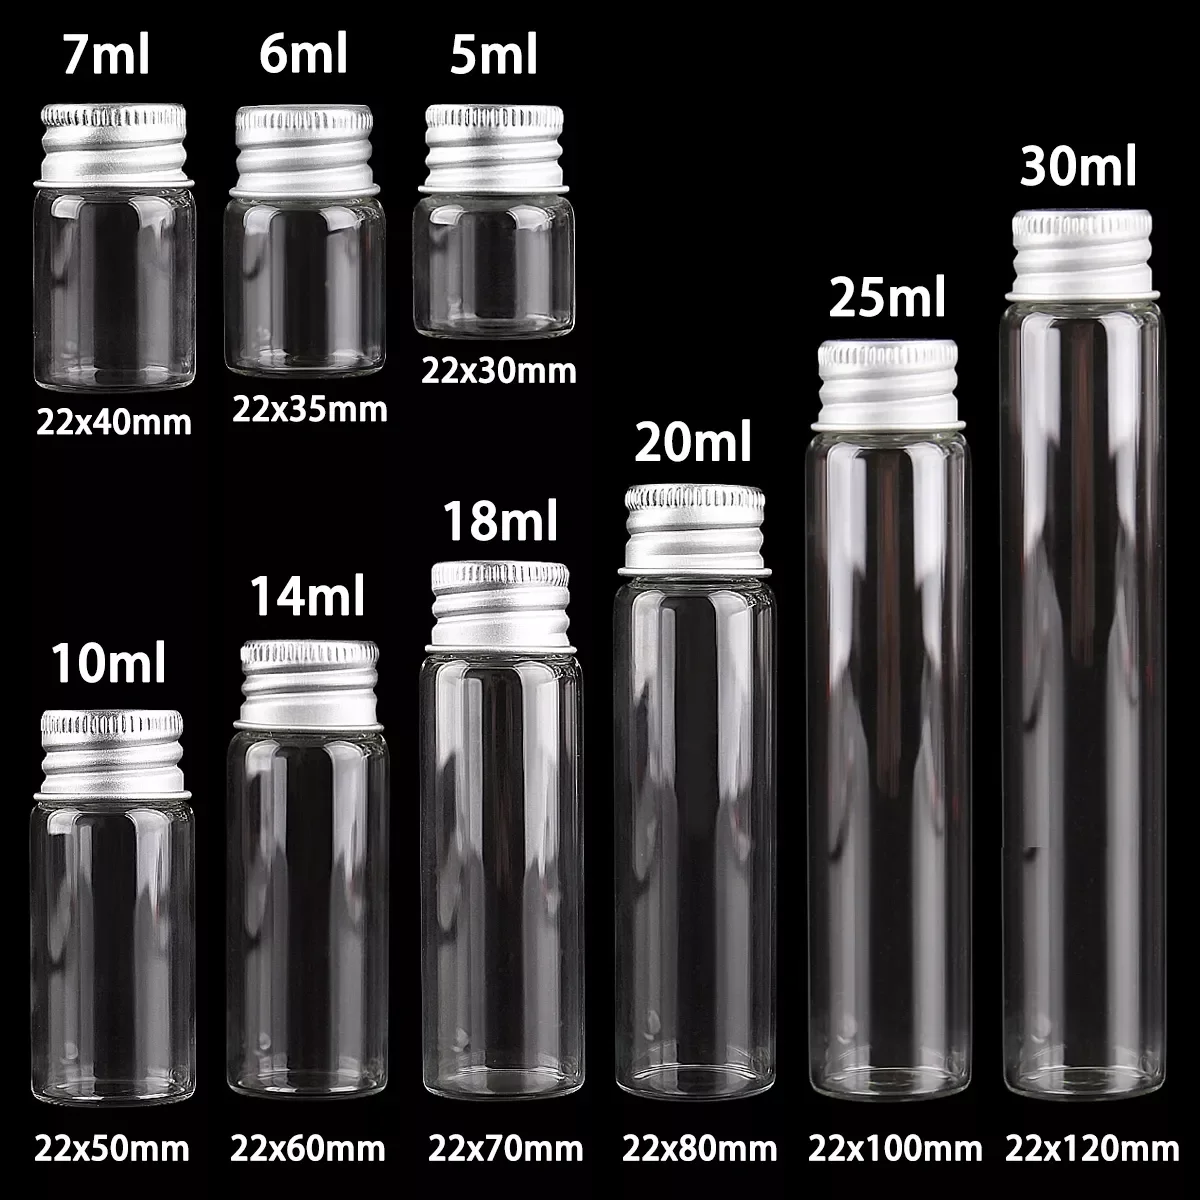 

pieces 5ml/6ml/7ml/10ml/14ml/18ml/20ml/25ml/30ml Glass Bottles with Aluminium Lids Small Mini Glass Jars 9 Sizes U-pick